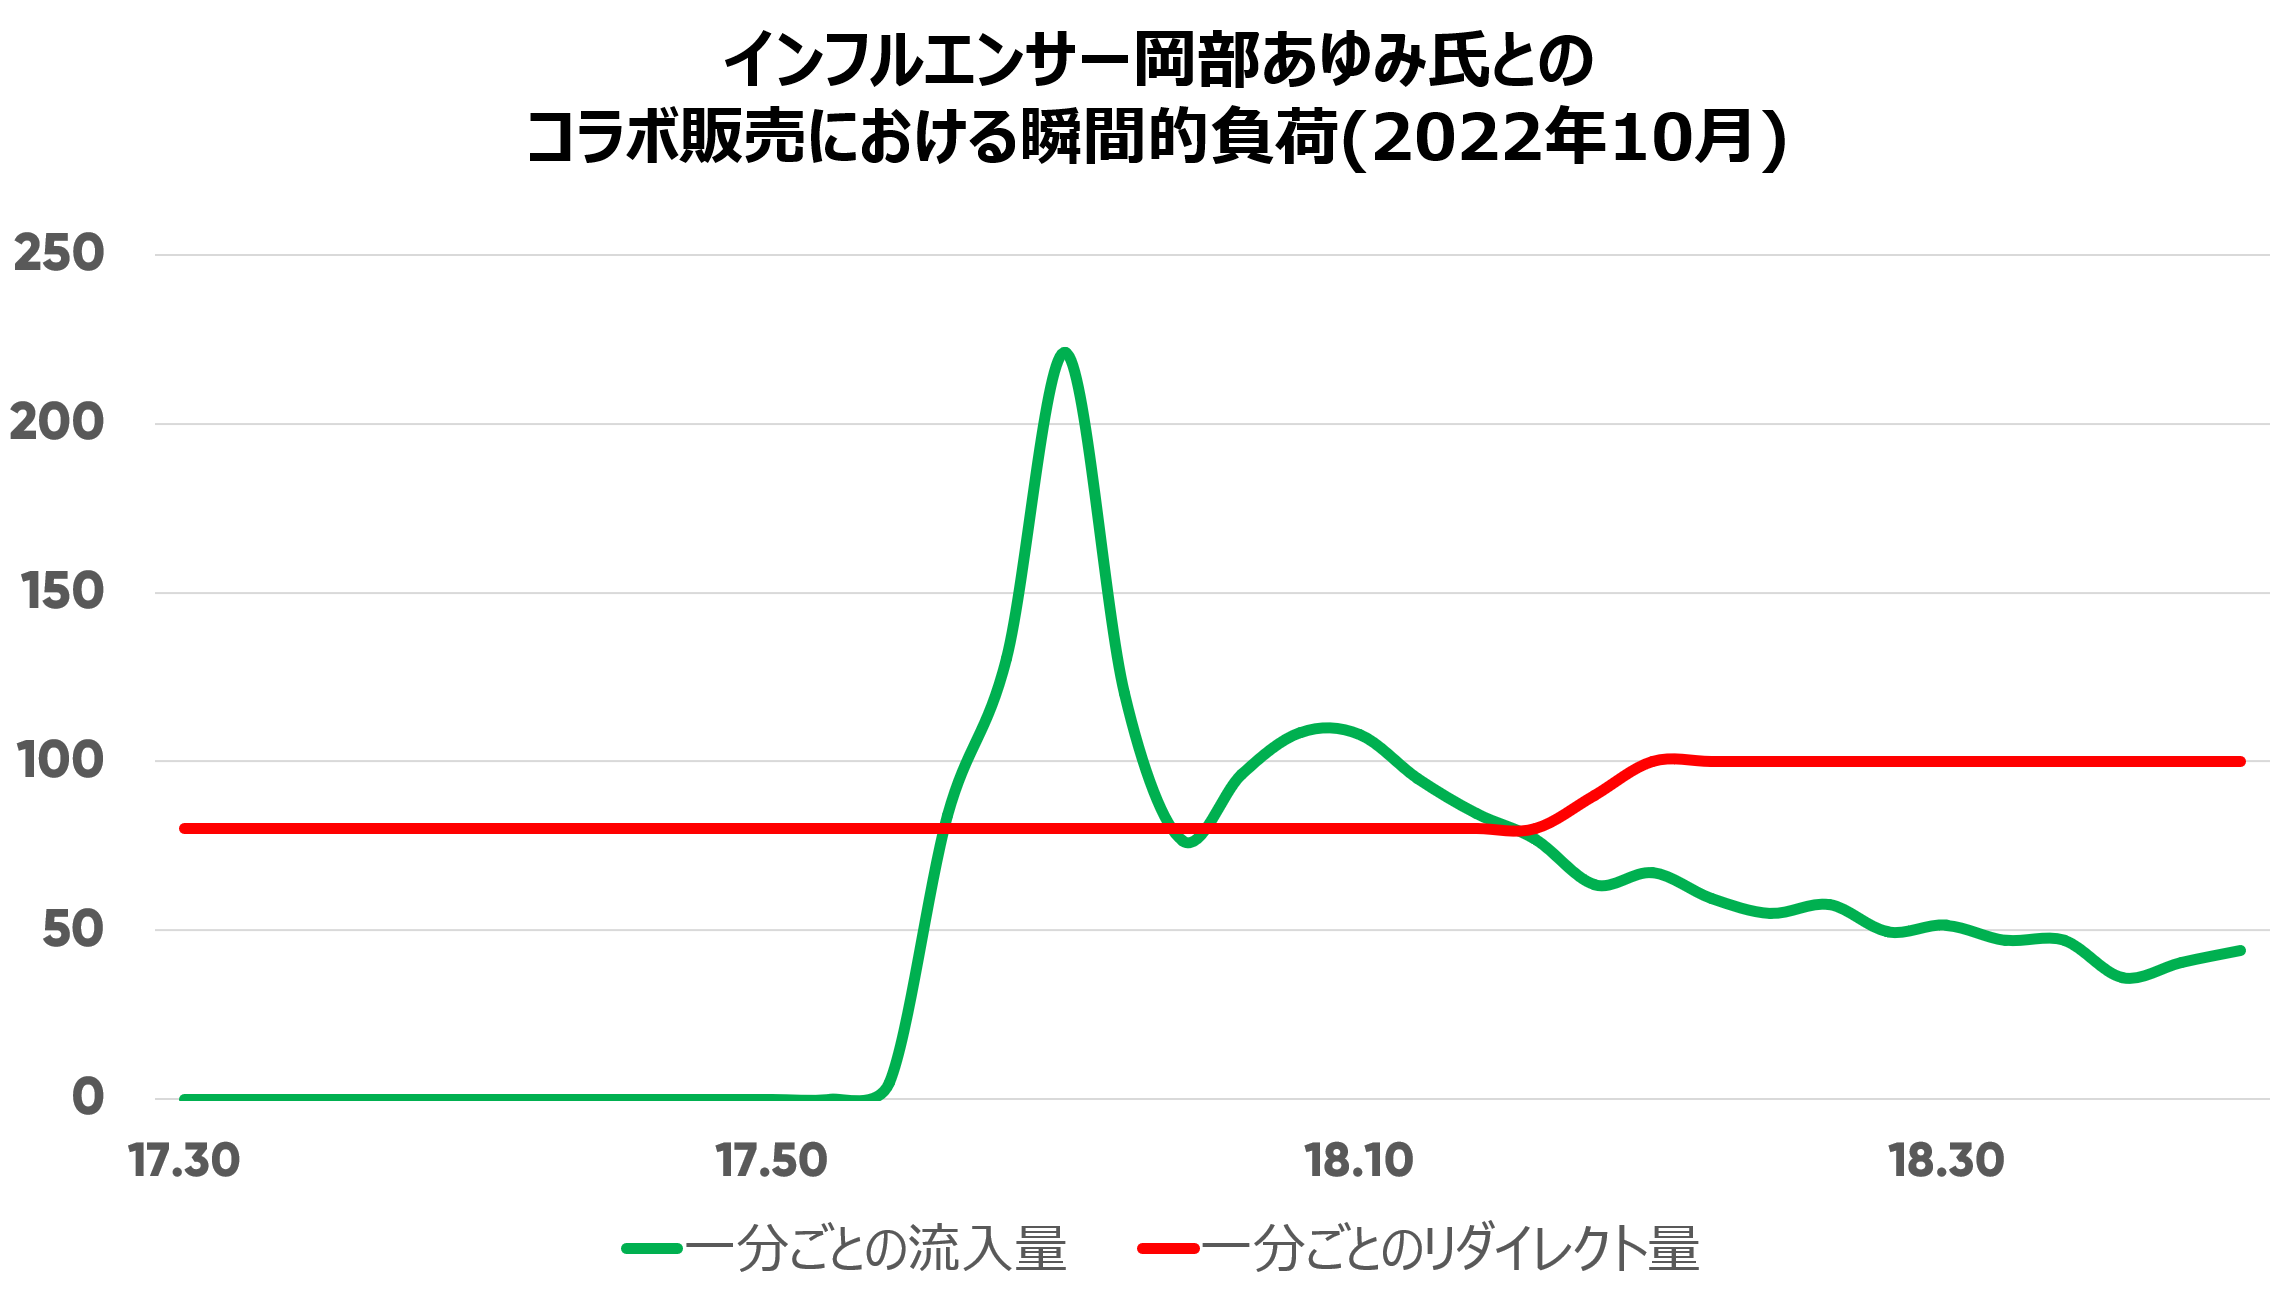 Kobe Lettuce traffic spikes